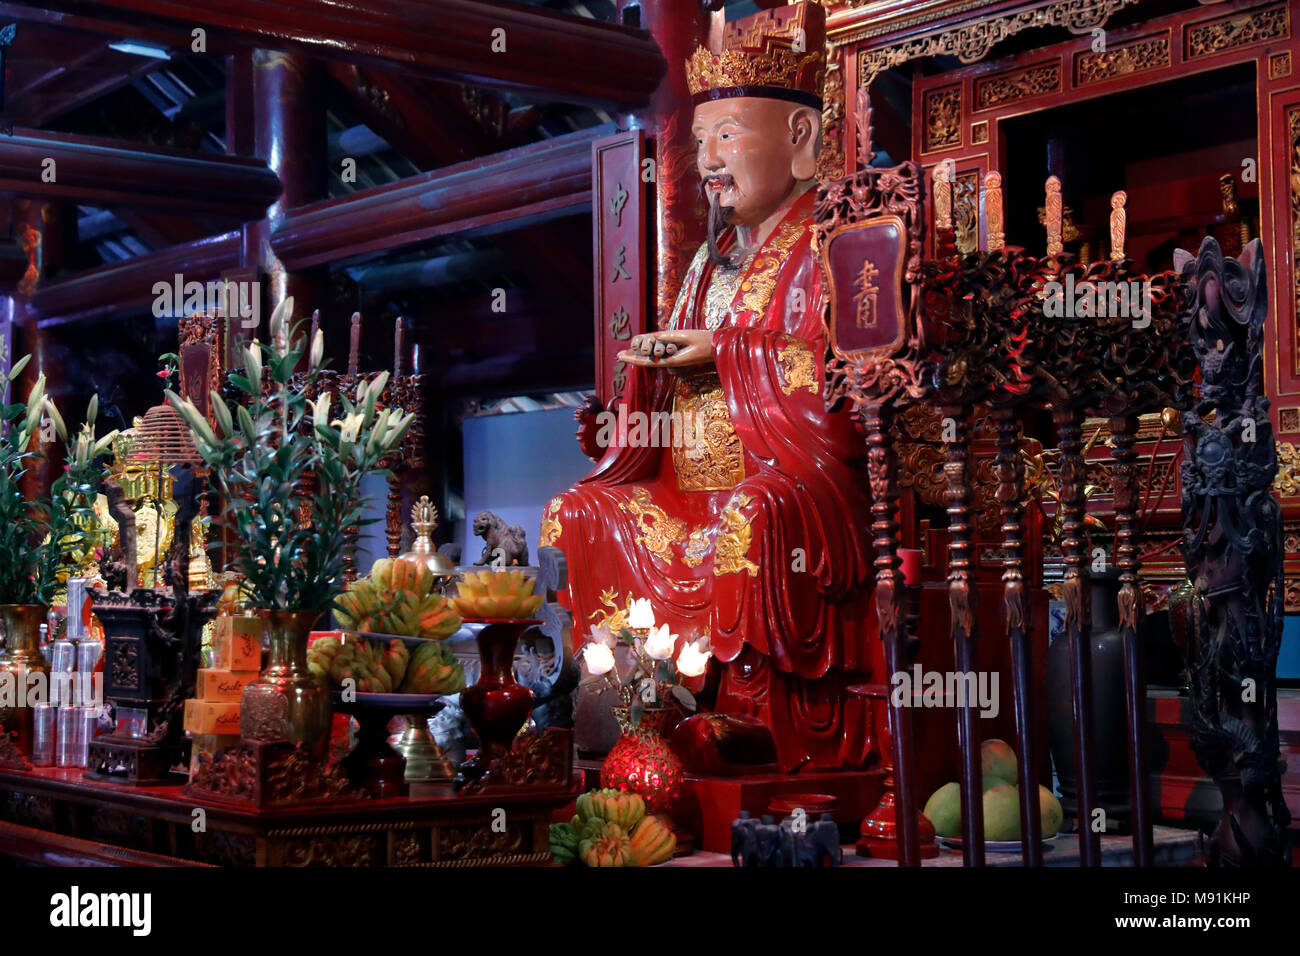 Temple of Literature.  Altar dedicated to Confucius. Hanoi. Vietnam. Stock Photo